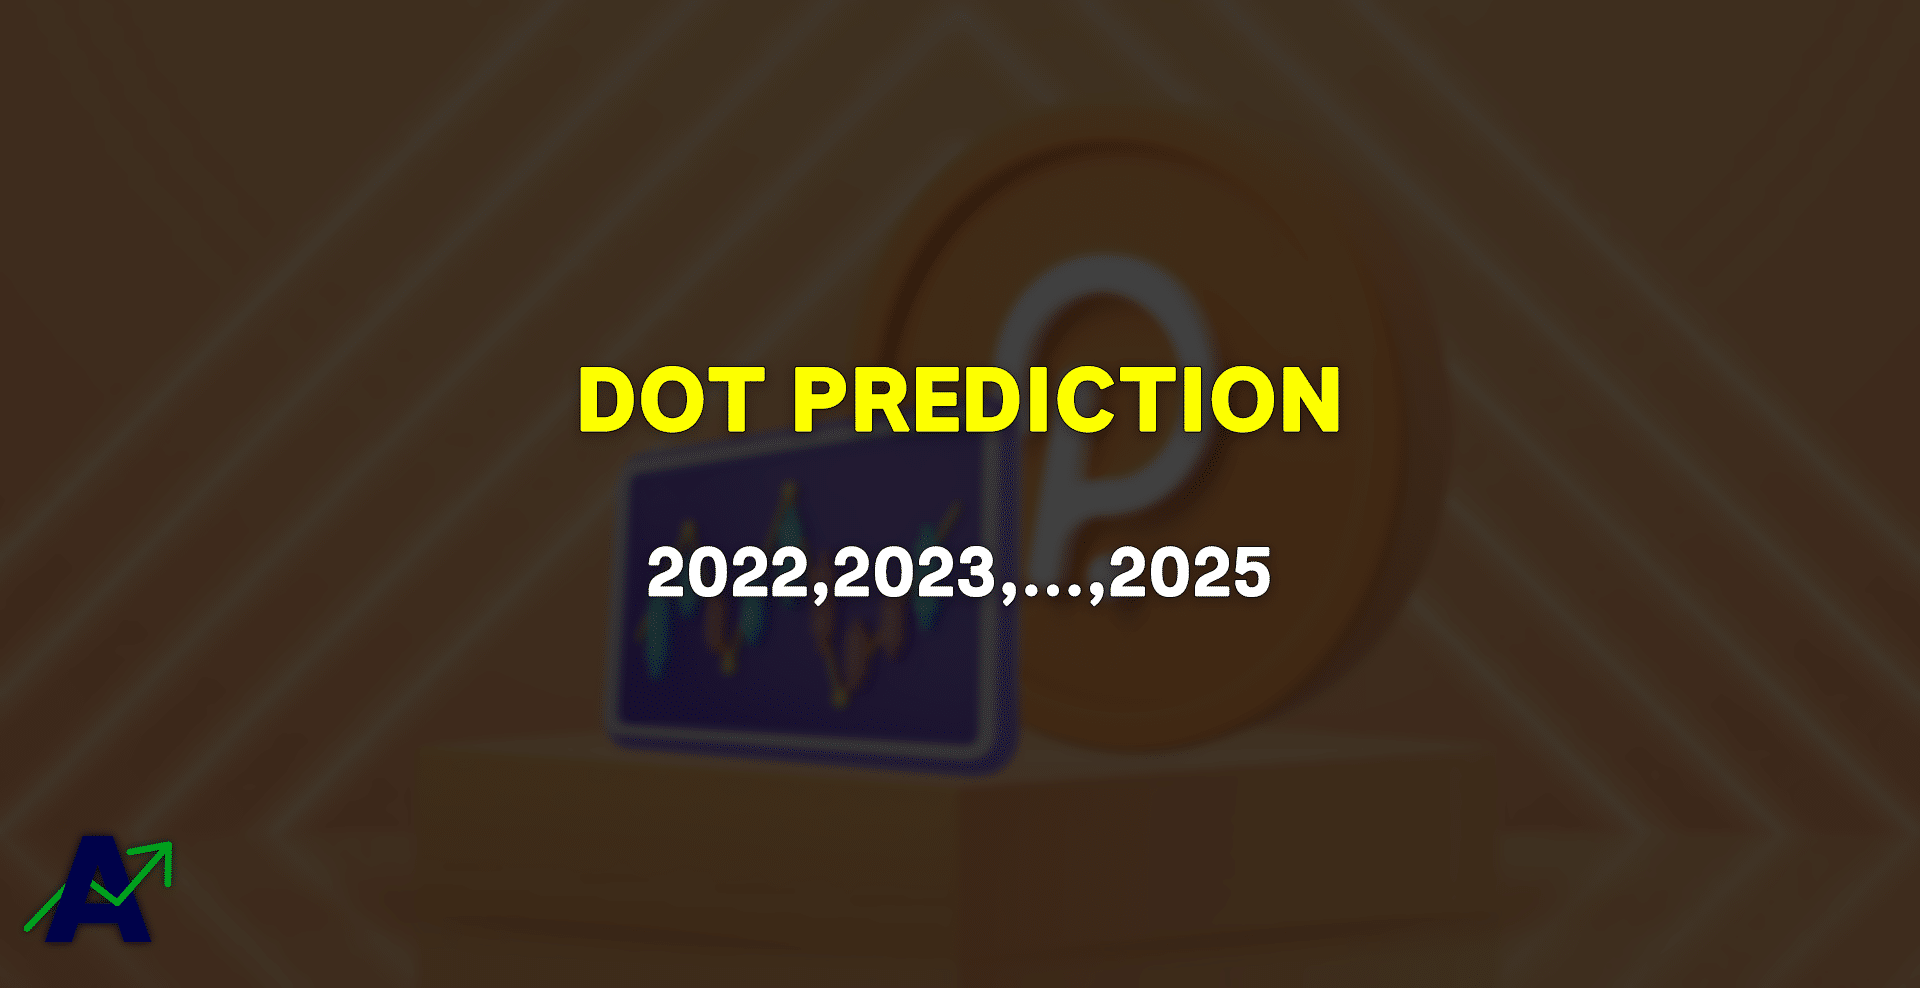 DOT Price Prediction for 2022, 2023, 2024 & 2025